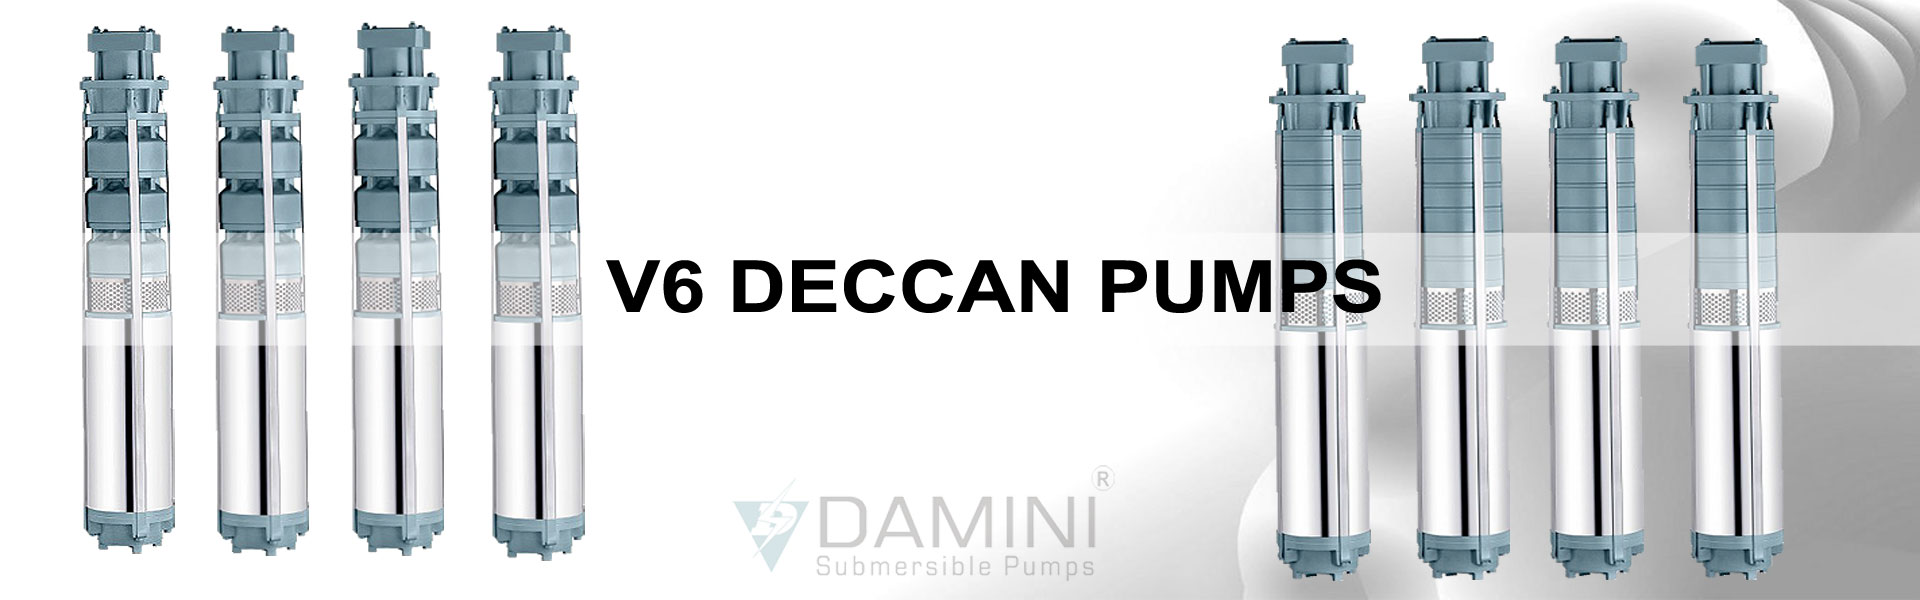 V6 Deccan Pumps